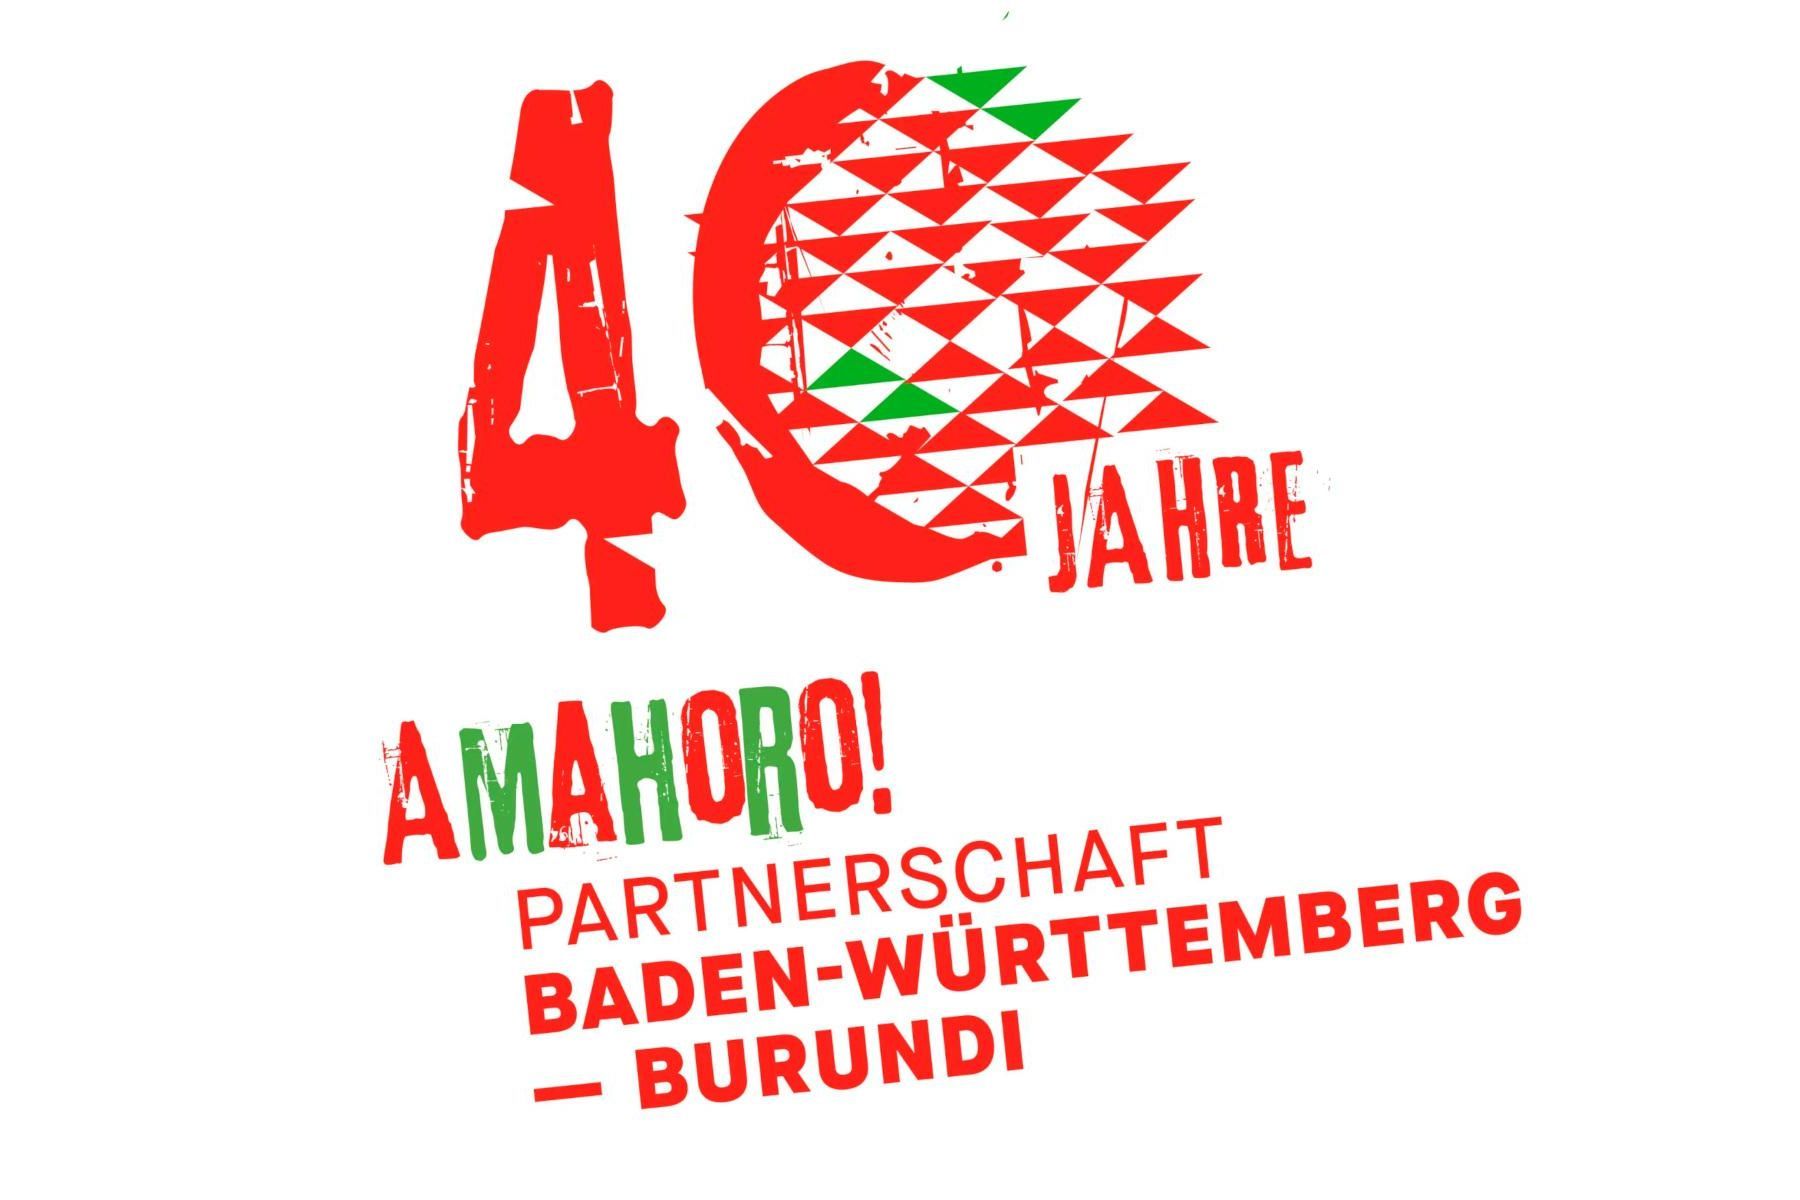 40 Jahre Amahoro! Partnerschaft Baden-Württemberg – Burundi